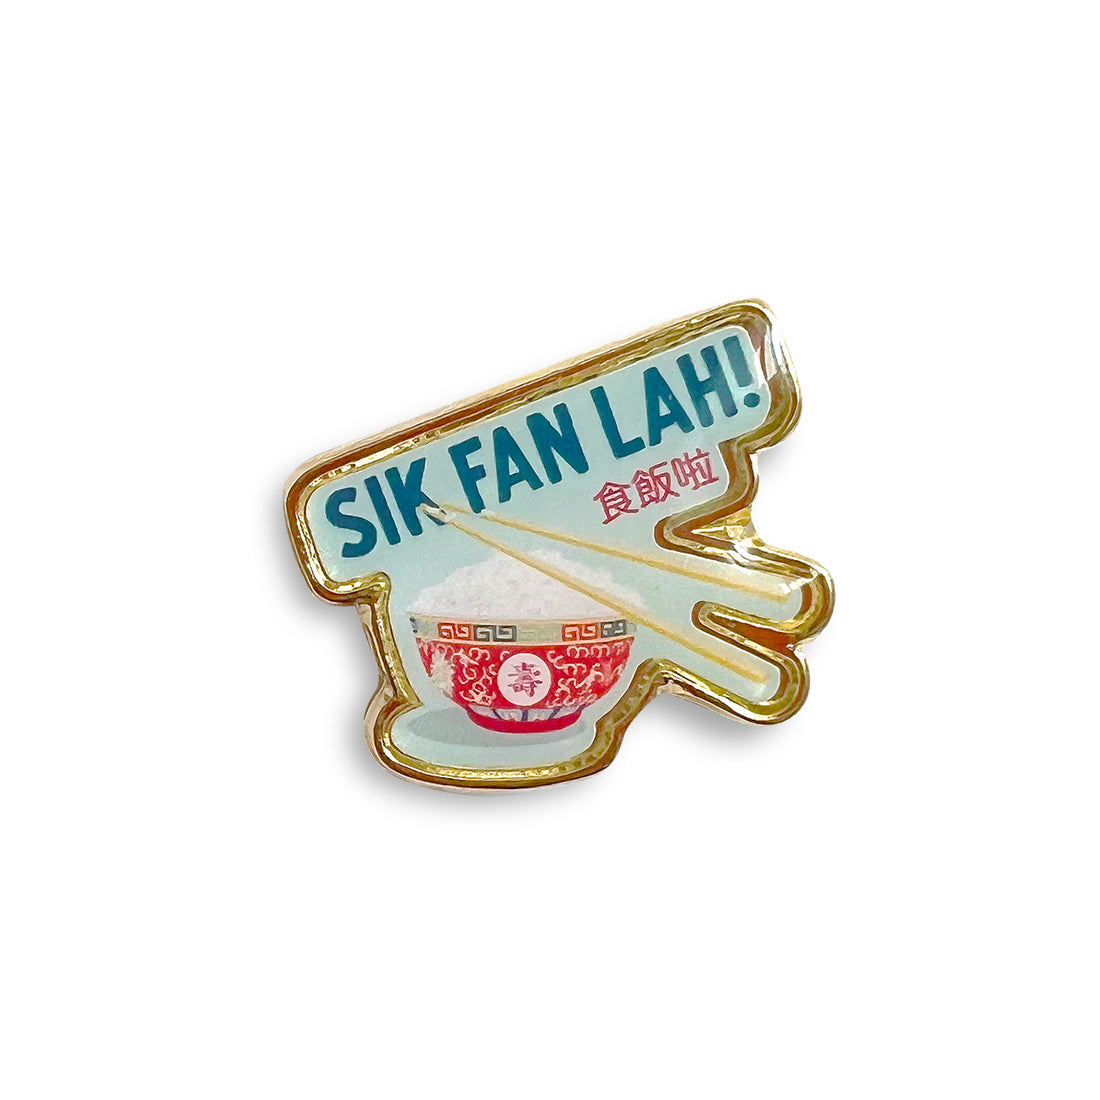 Sik fan lah (食飯啦) lapel pin by I&